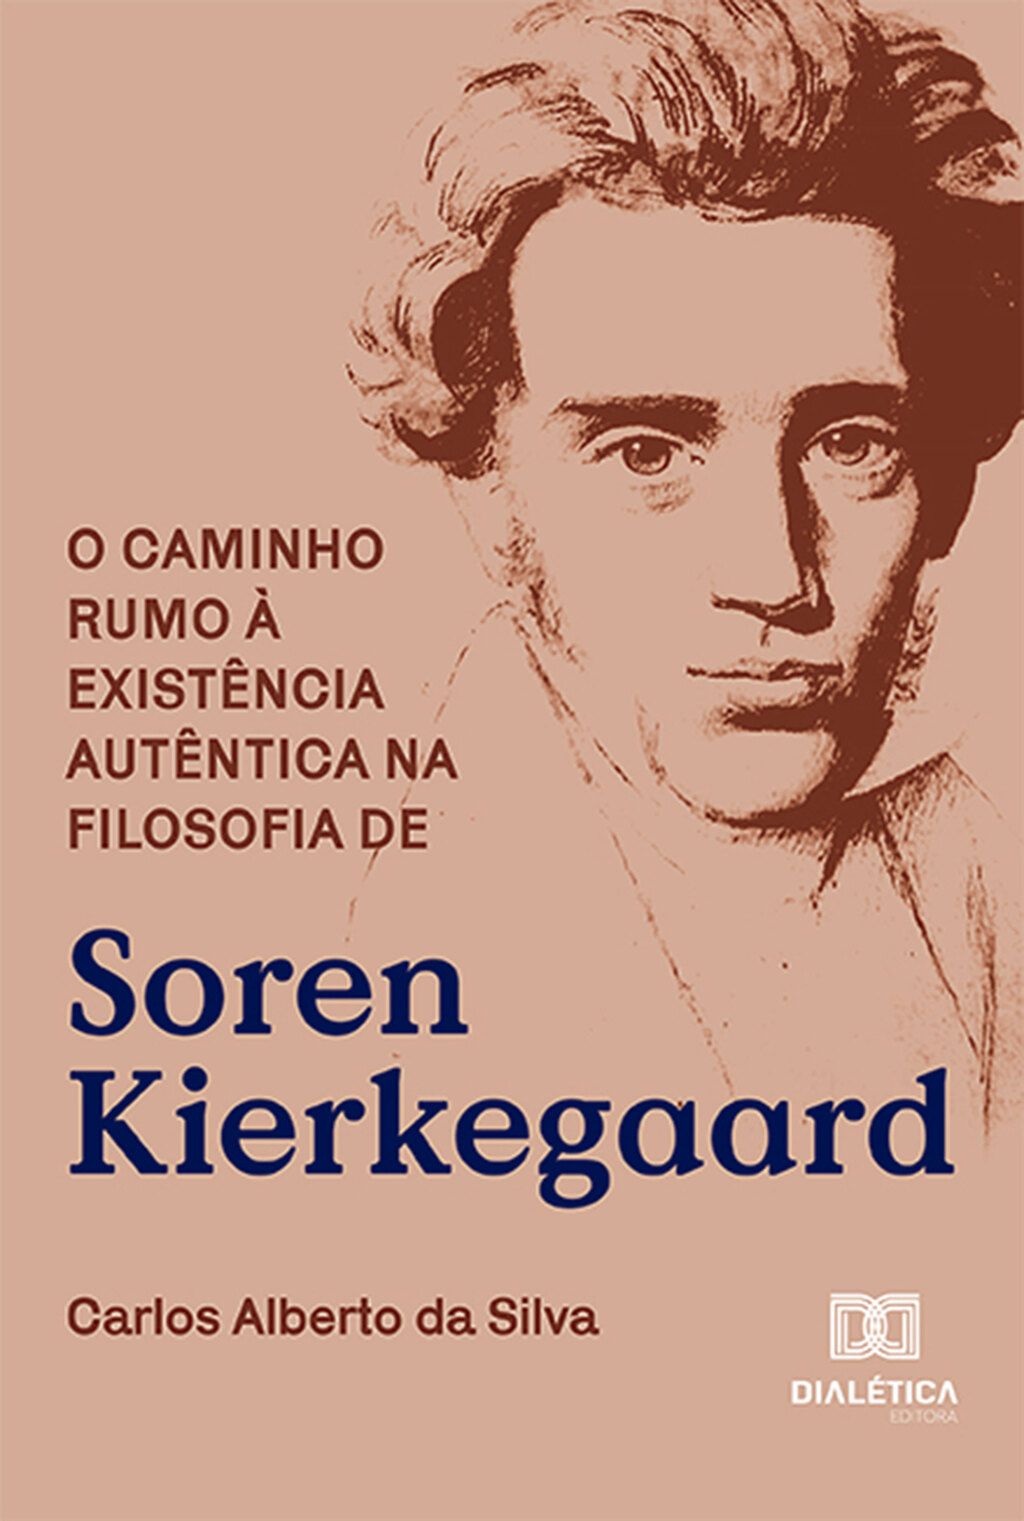 O caminho rumo à existência autêntica na filosofia de Soren Kierkegaard